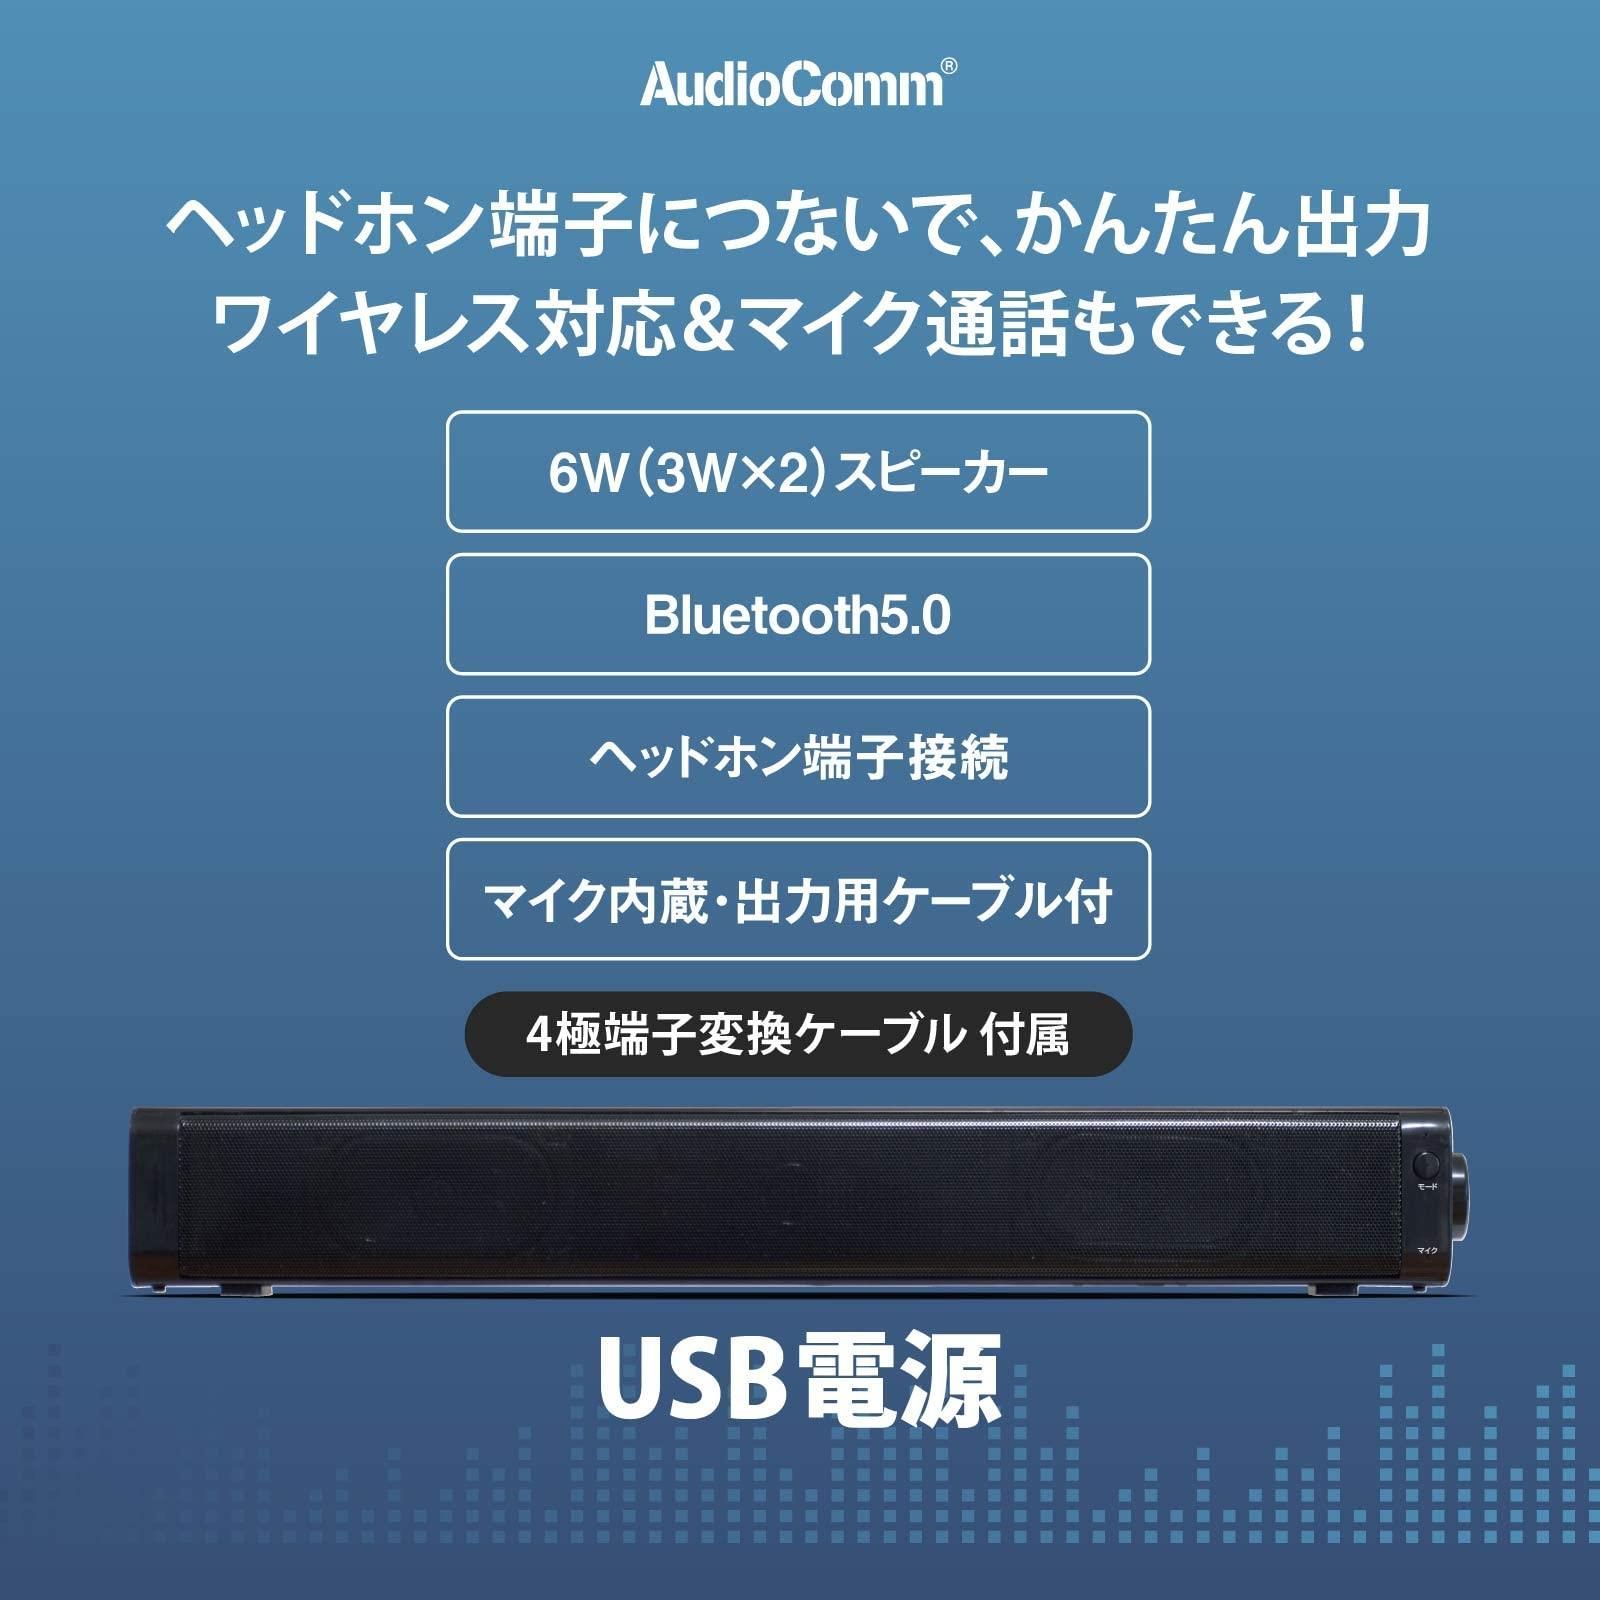 【人気商品】 オーム電機 AudioComm バースピーカーMINI ワイヤレススピーカー Bluetoothスピーカー マイク通話  ASP-SB206N 03-2971 OHM ブラック